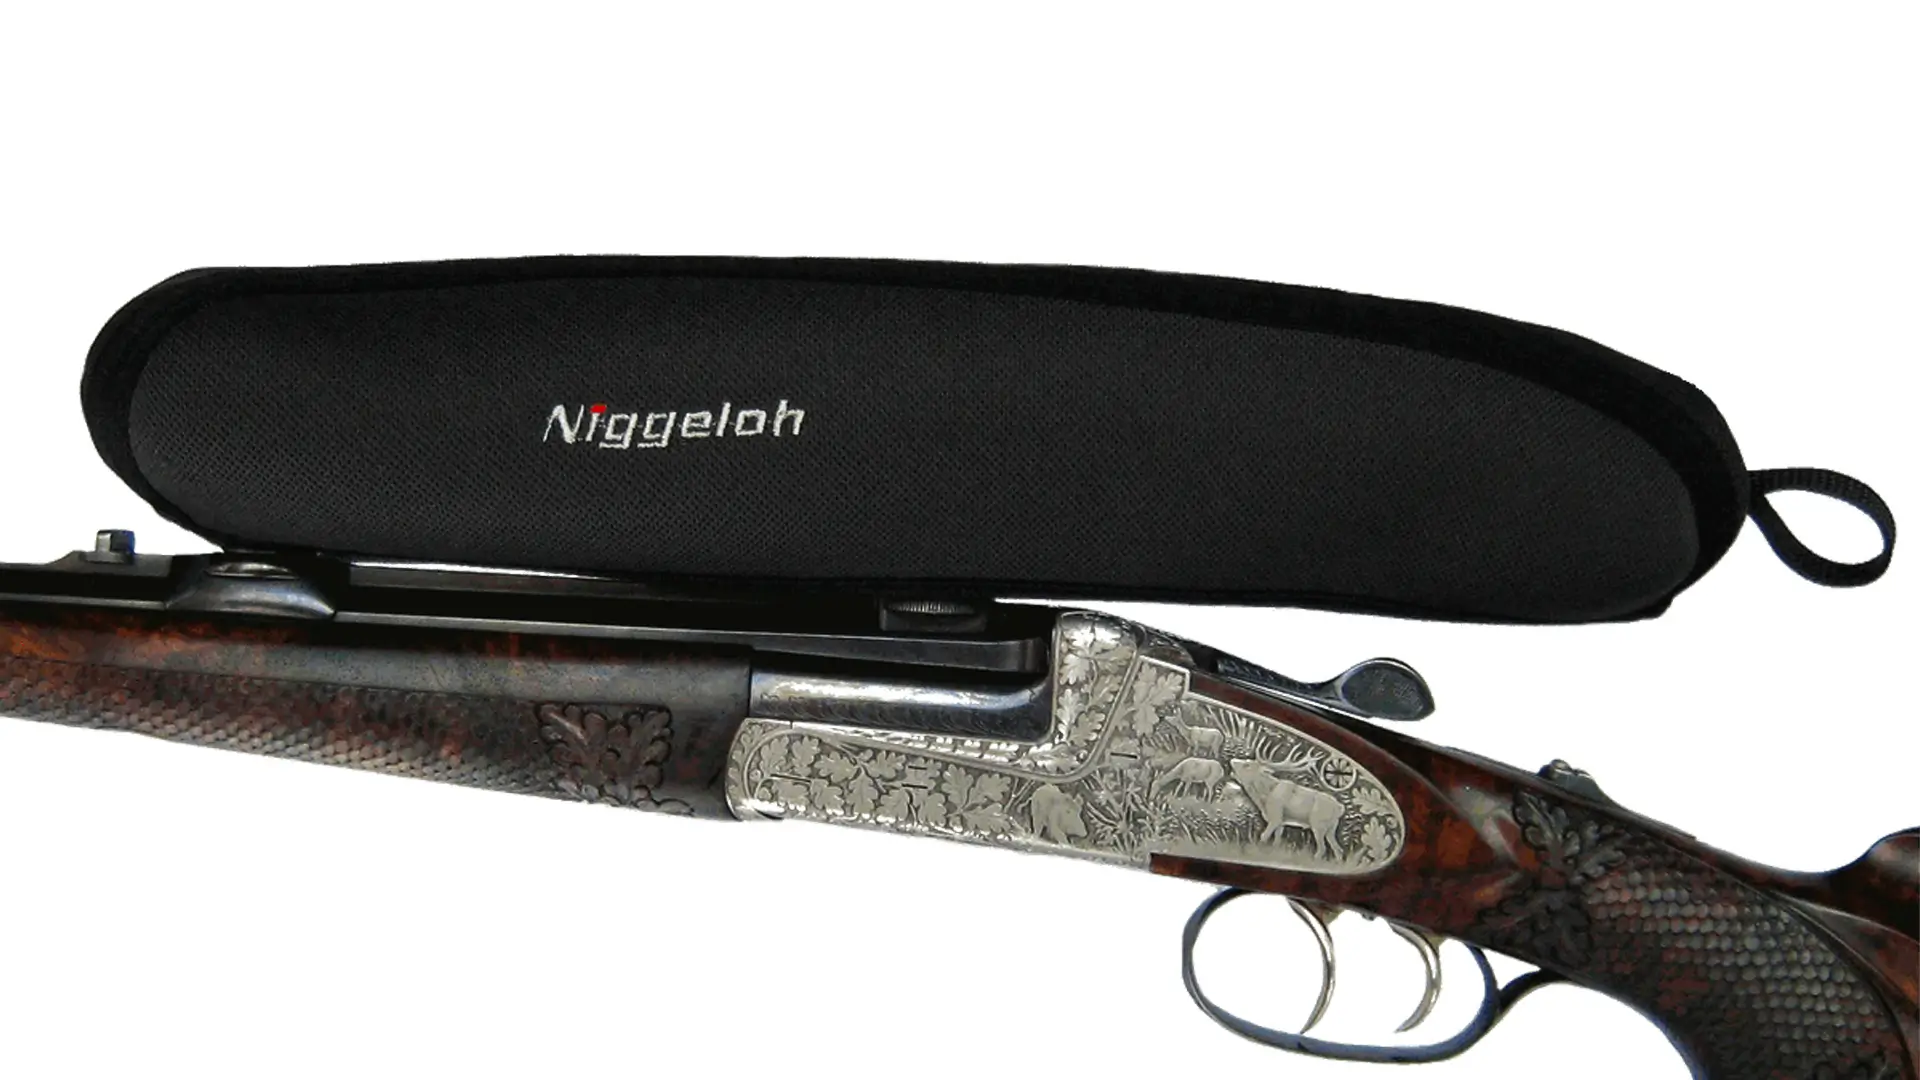 Niggeloh Zielfernrohr-Cover in XL, schwarz, bietet optimalen Schutz und einfache Handhabung